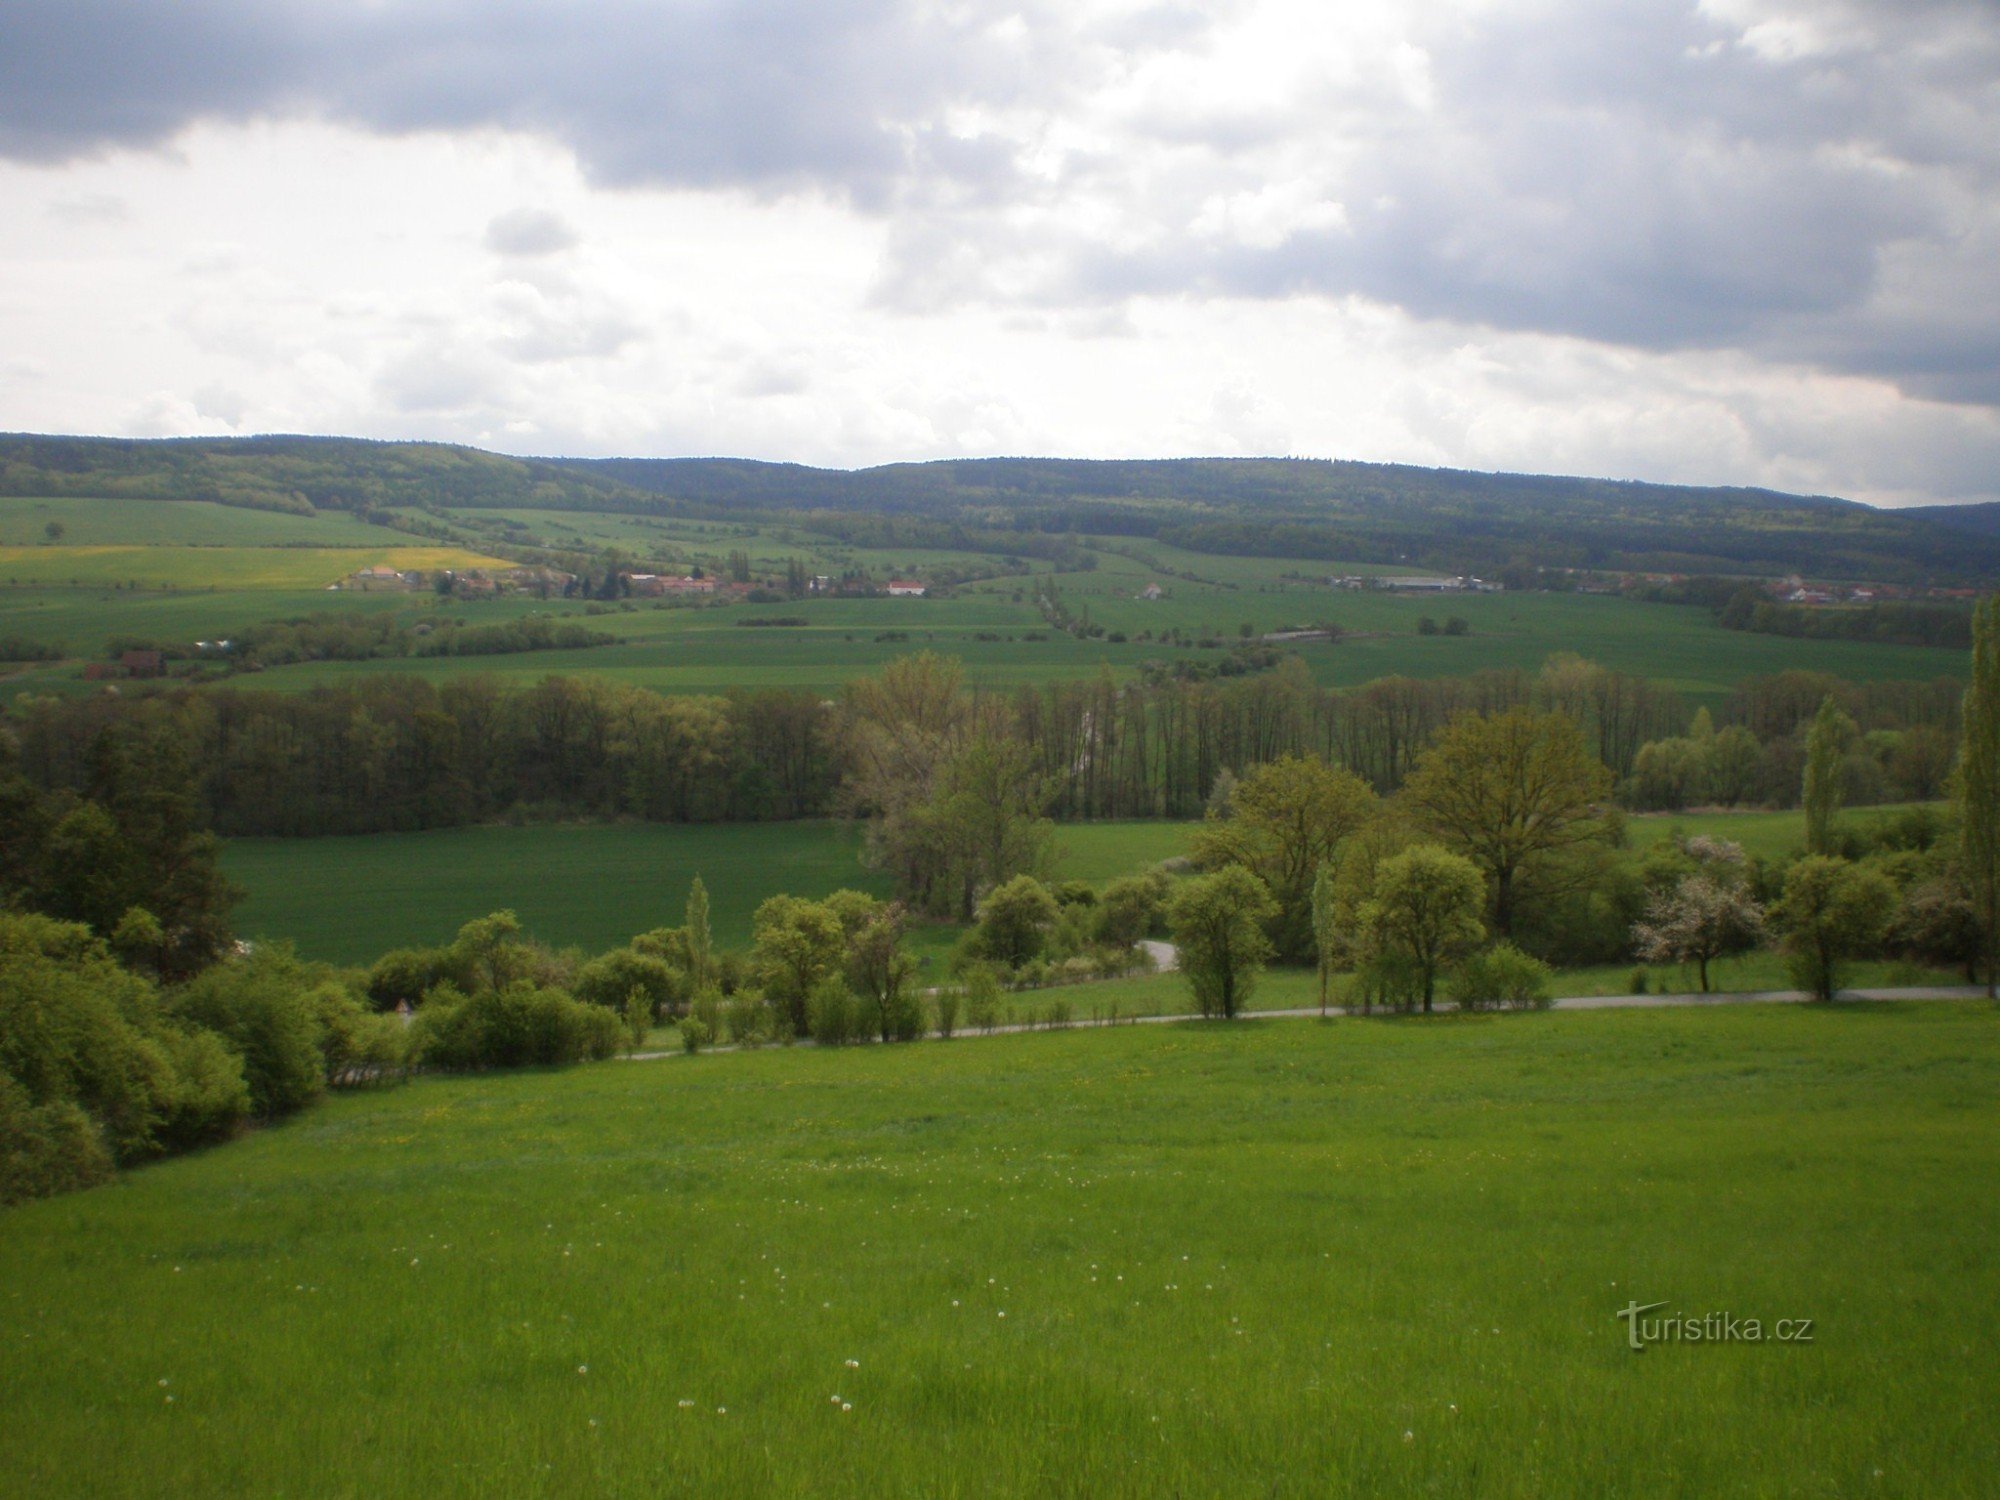 Άποψη του Brdy από το δρόμο Liteň - Svinaře